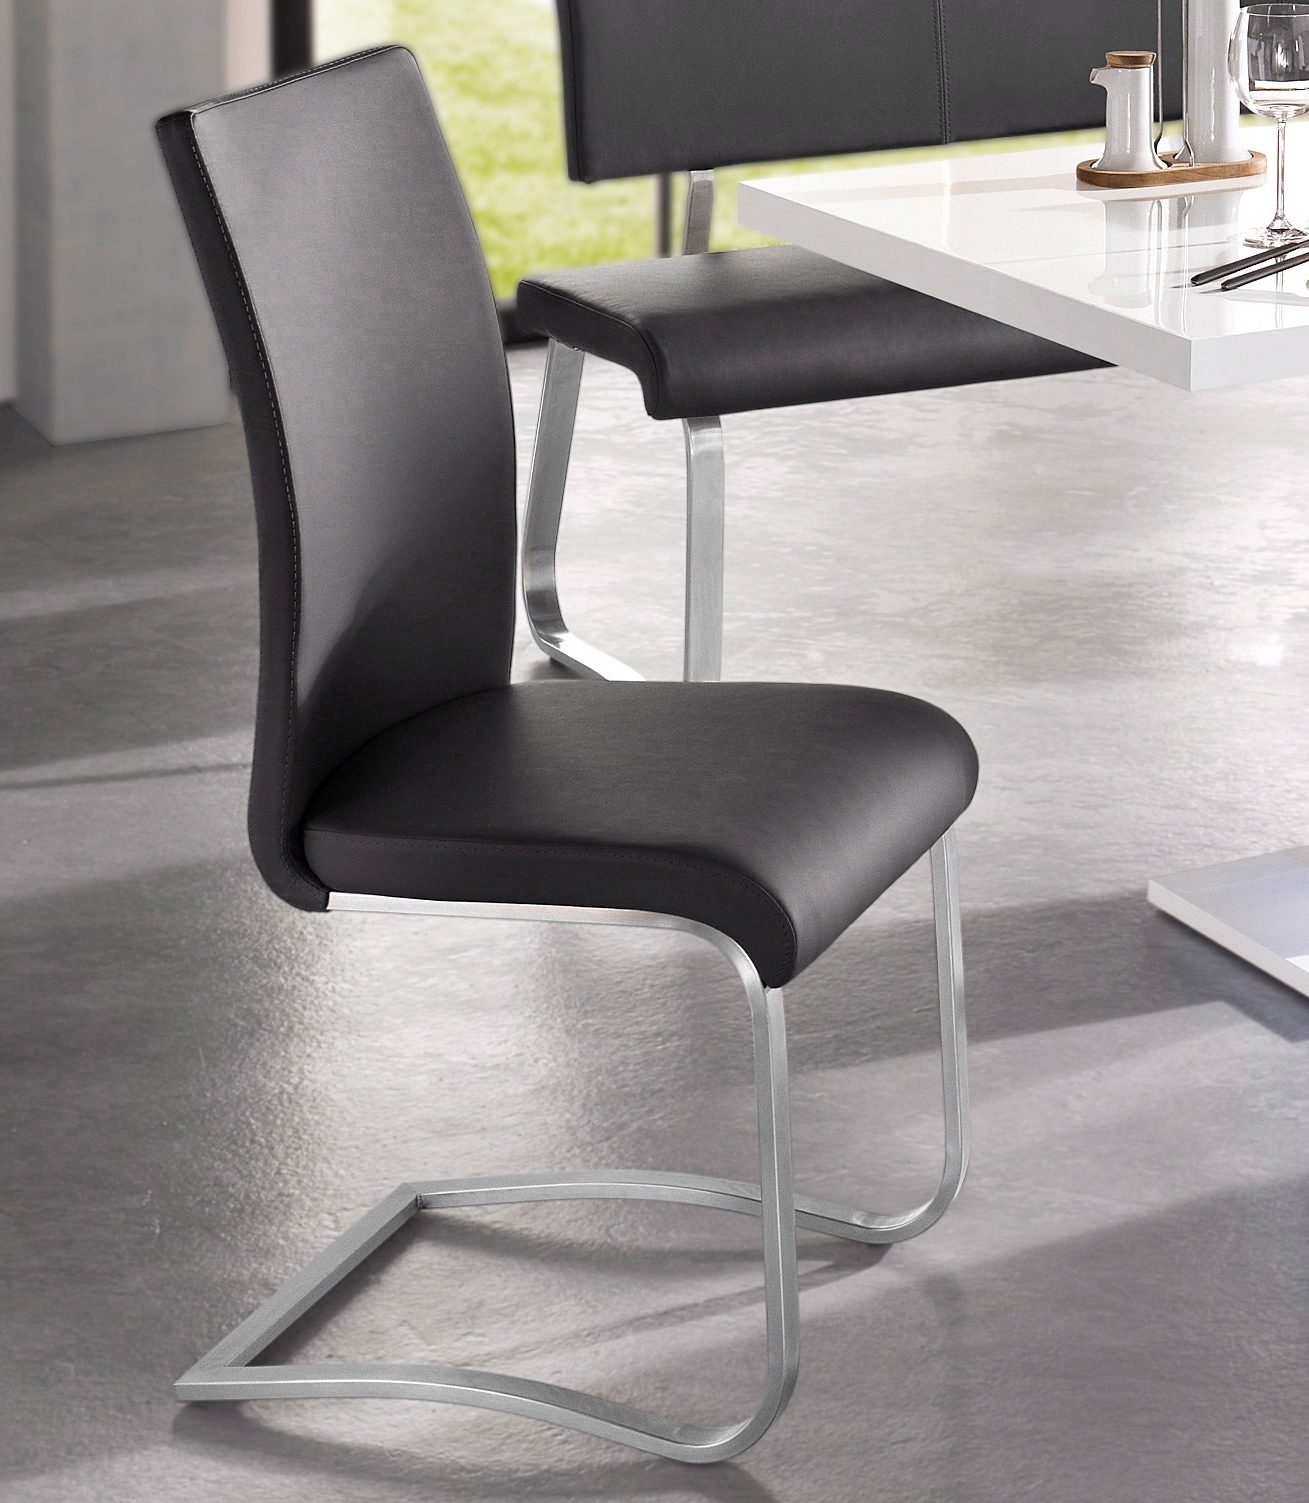 MCA furniture Vrijdragende stoel Arco set van 2, 4 en 6 stuks, stoel belastbaar tot 130 kg (set)